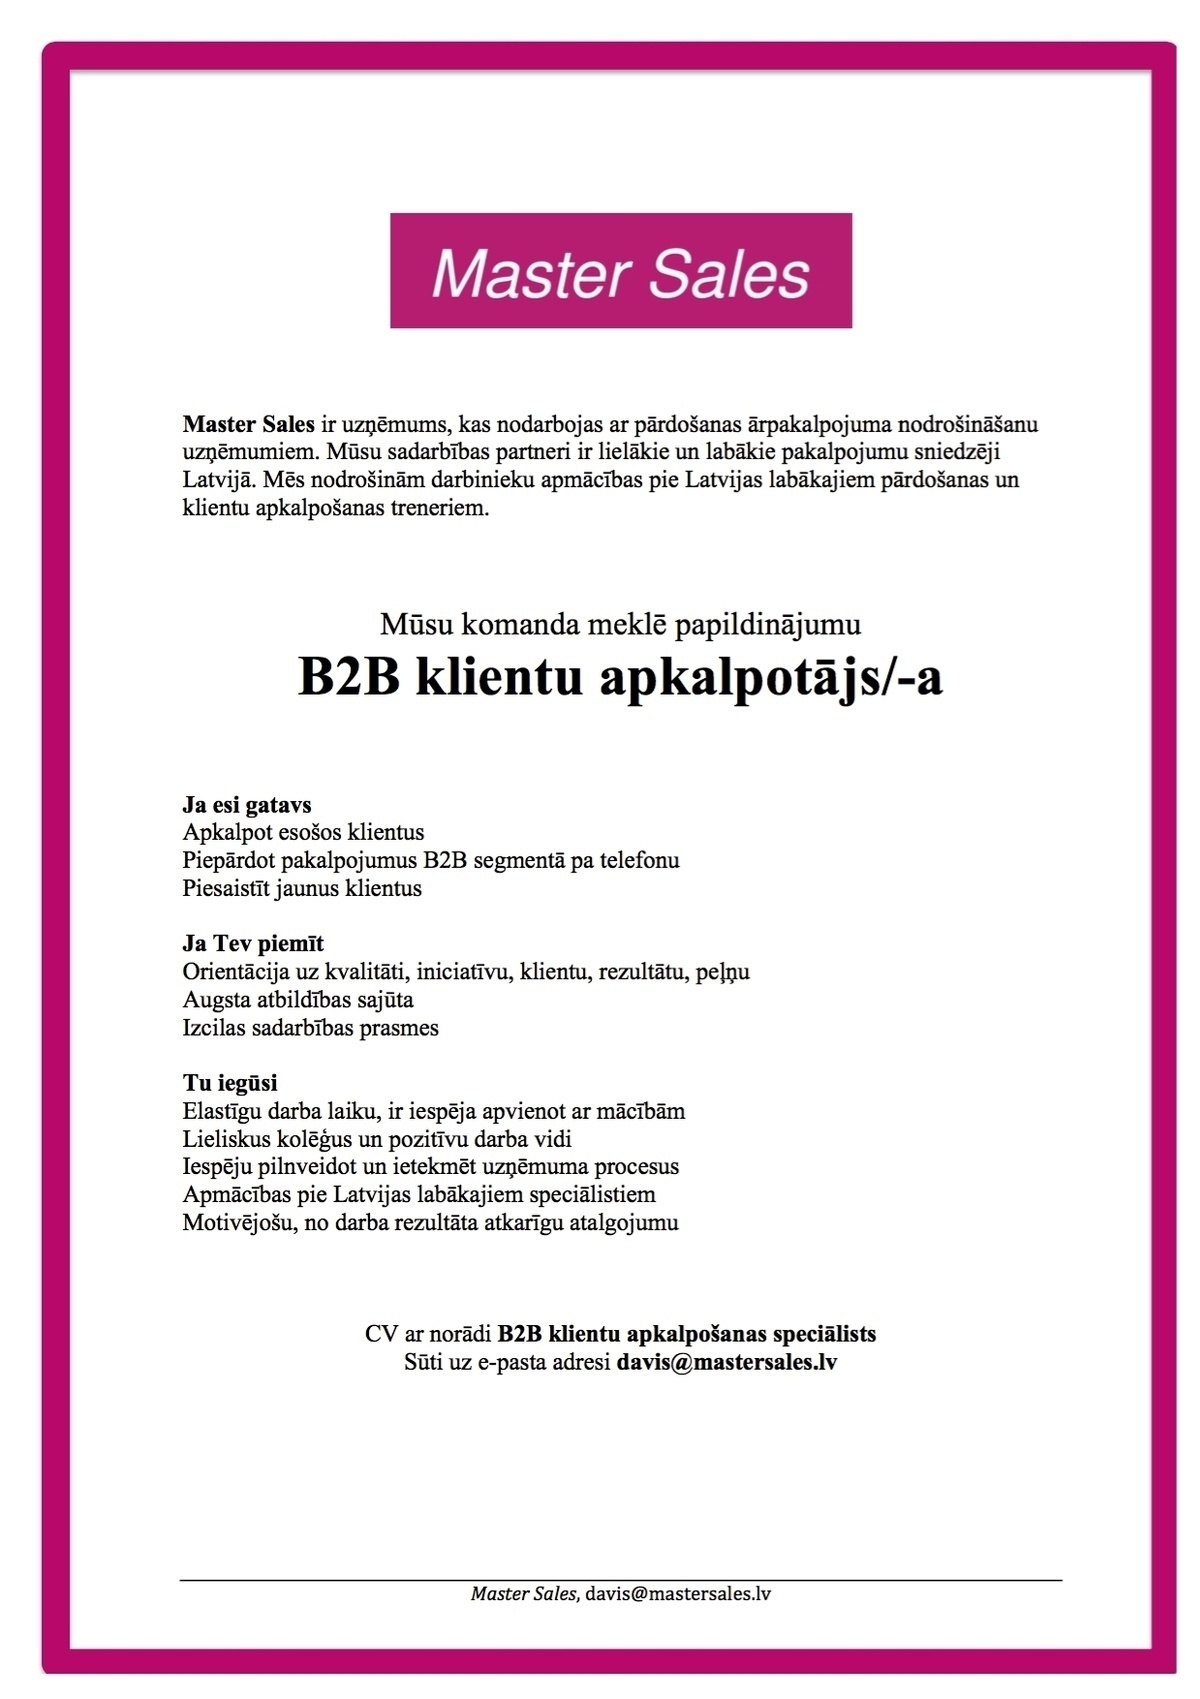 Master Sales, SIA B2B klientu apkalpotājs/-a